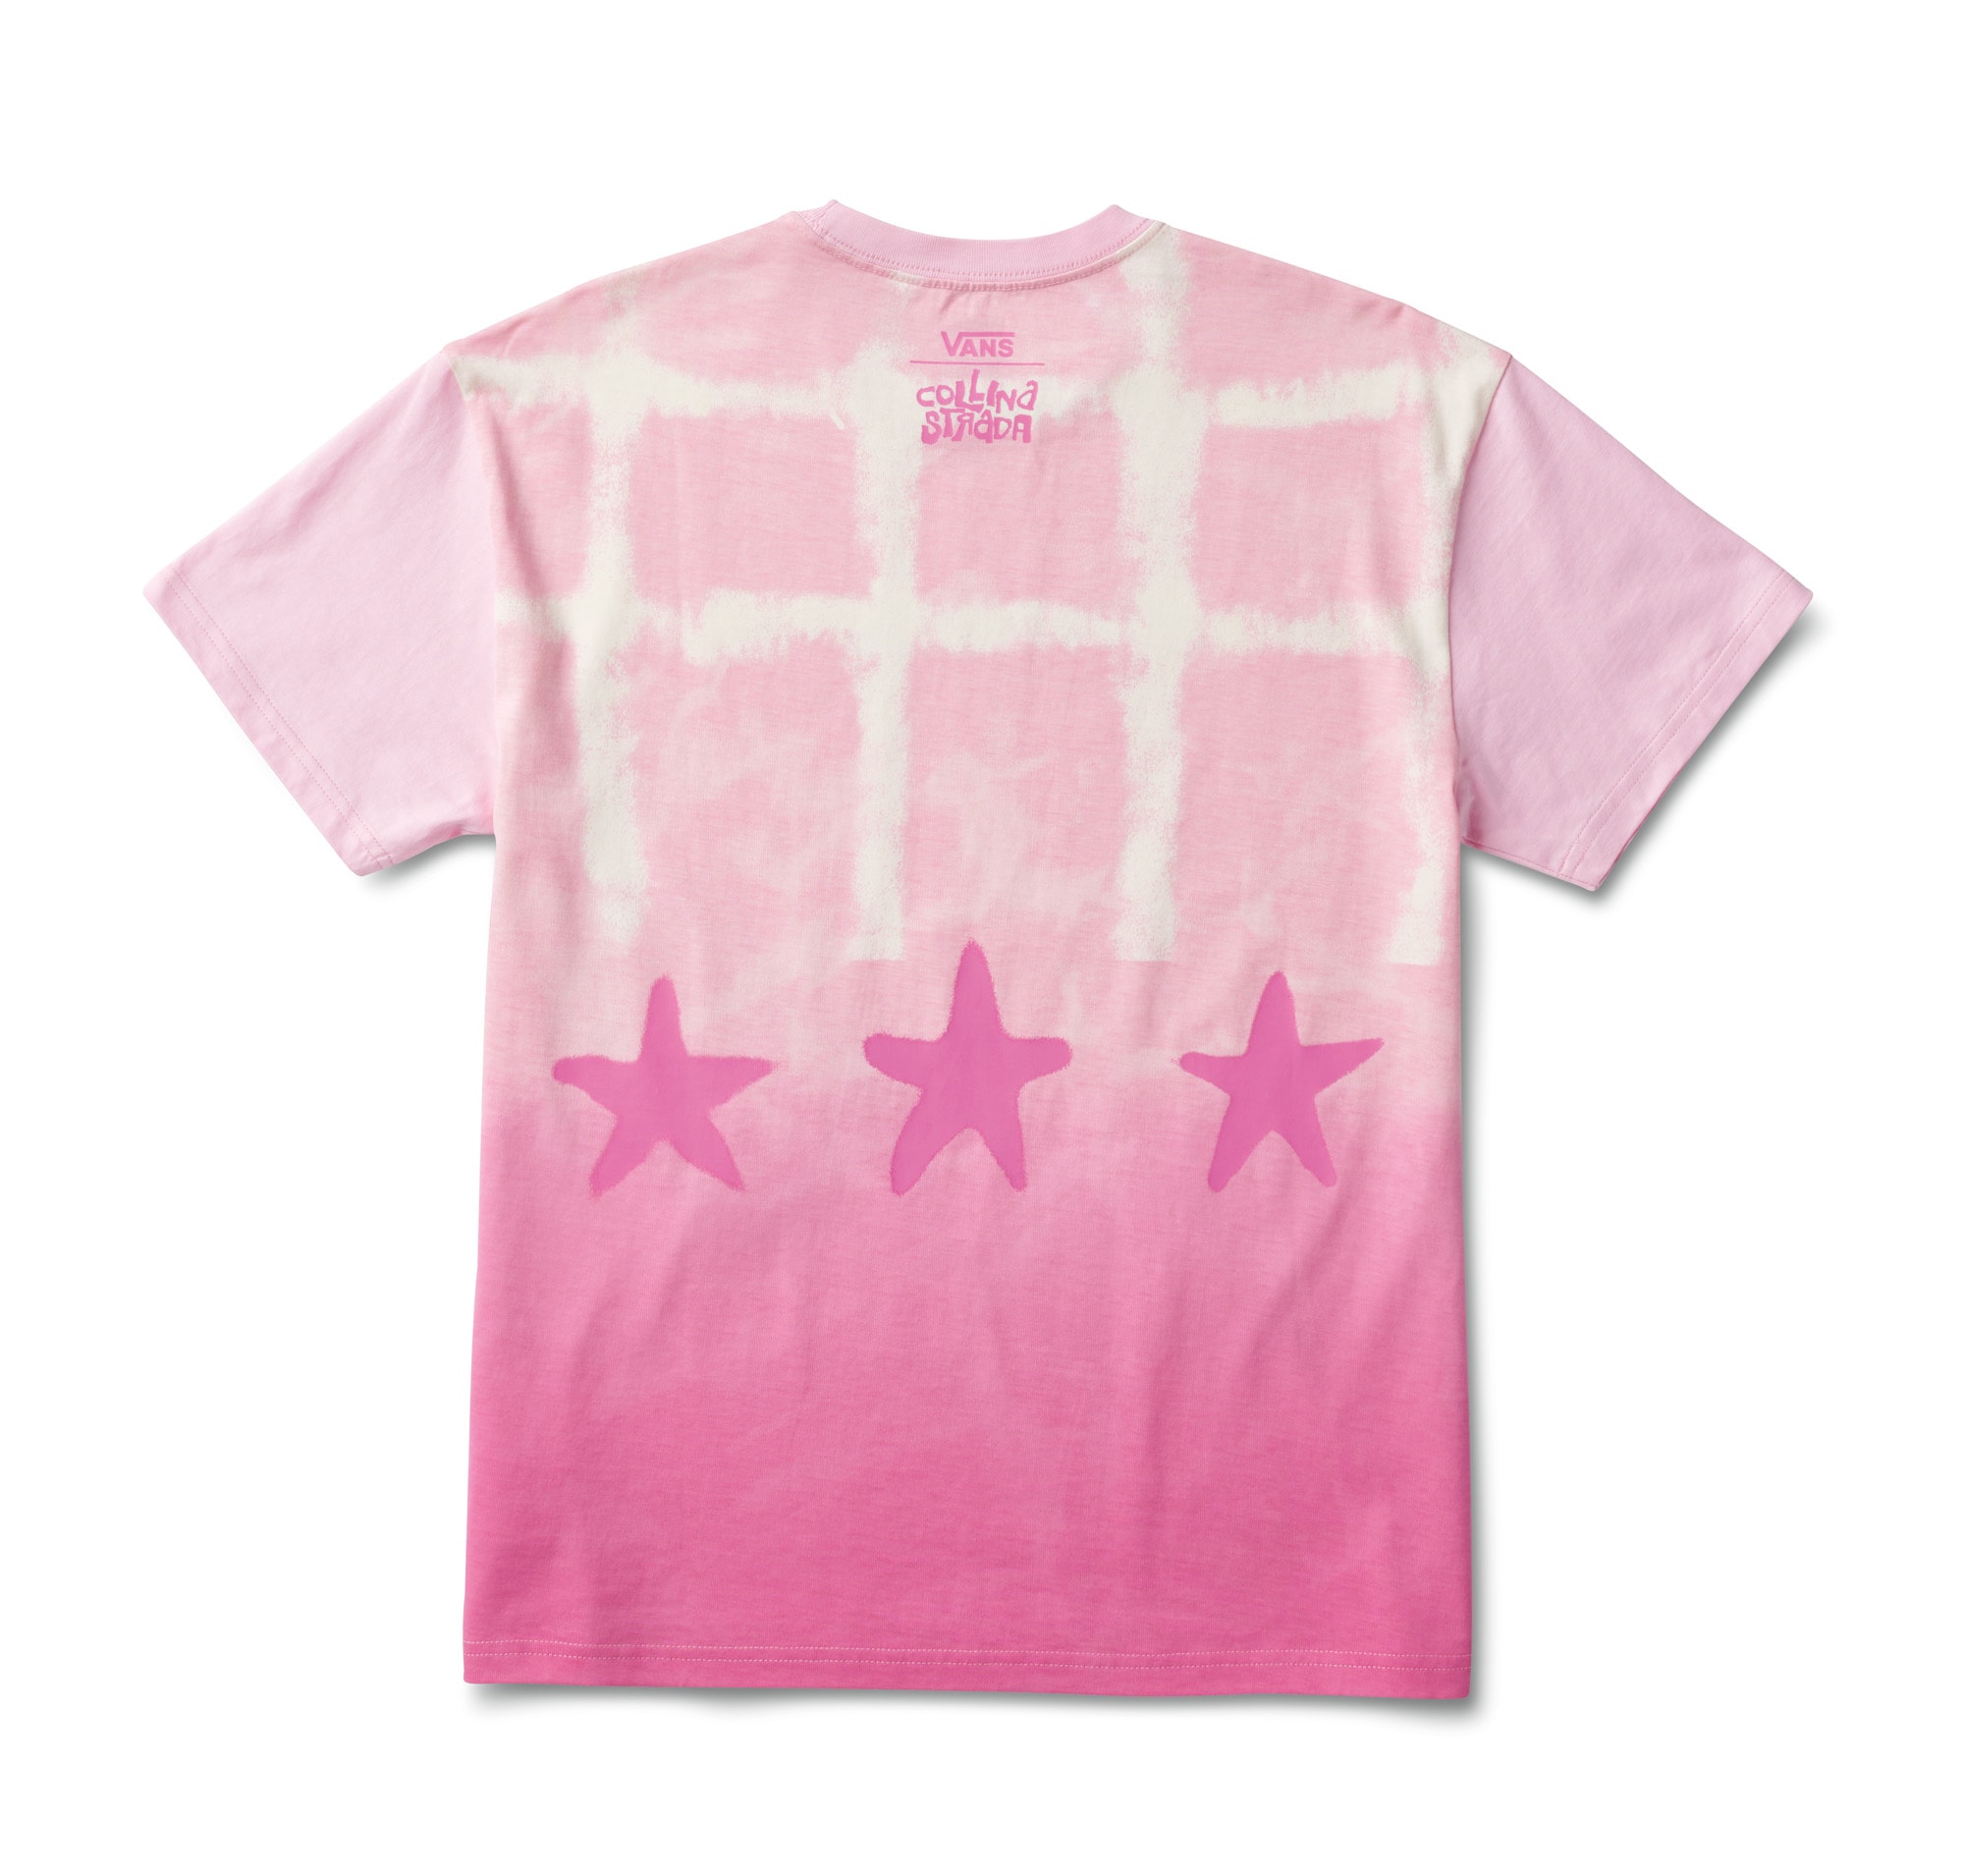 https://www.vans.ca/content/publish/caas/v1/media/287272/data/81ecc65cd630c01fbb64b2f715a0d6be/collina-pink-shirt.jpg